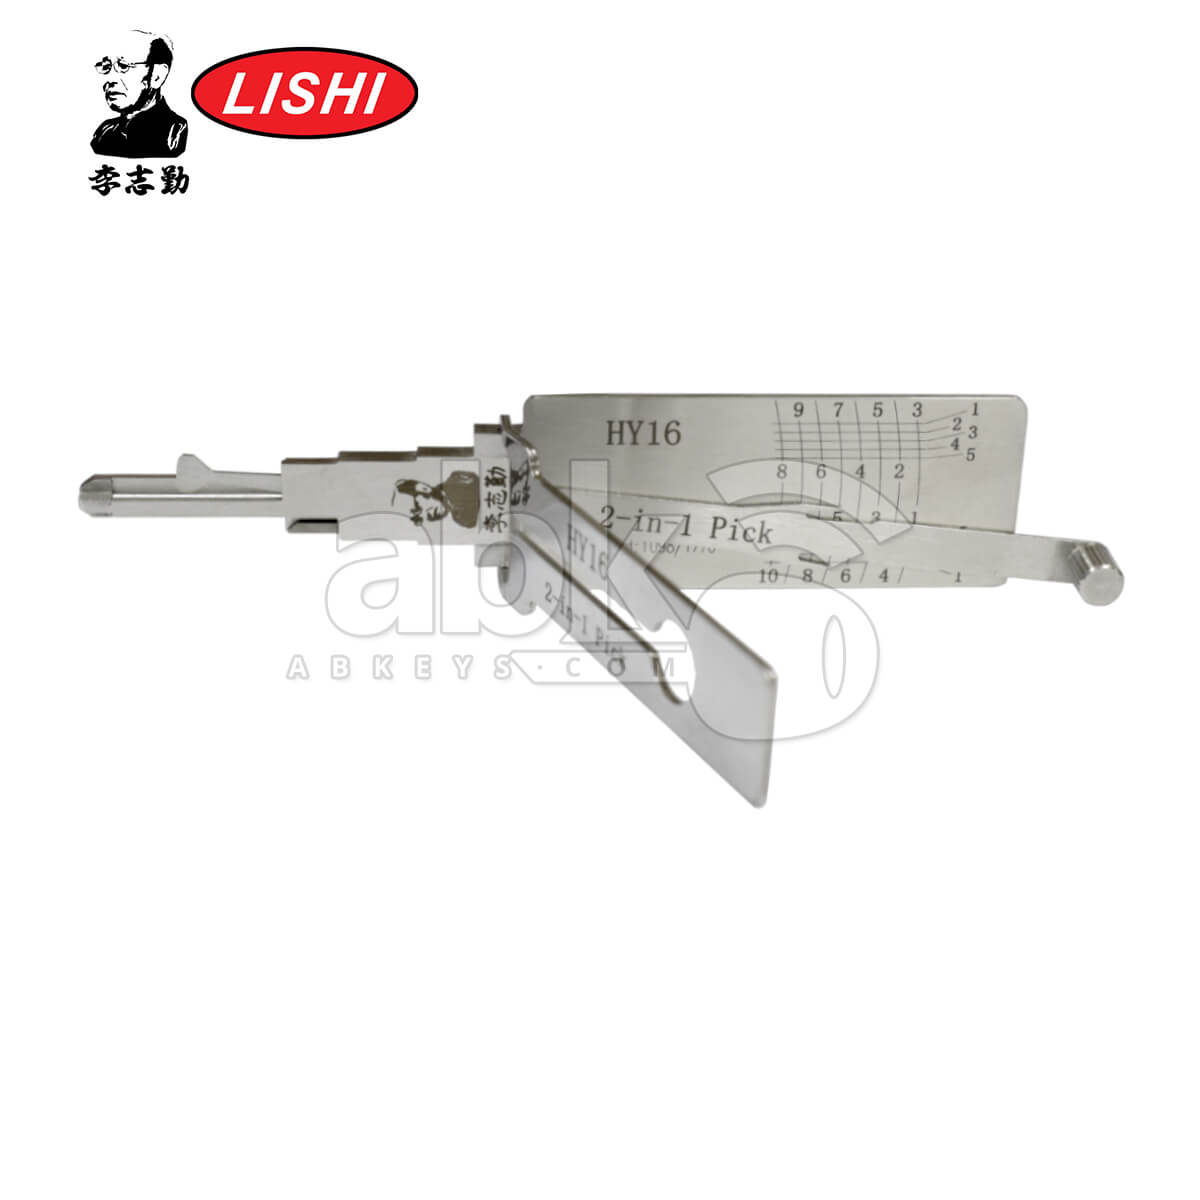 Original Lishi HY16 HYN14 2-in-1 Pick & Decoder for Hyundai & Kia Lishi Tool - ABK-1712 - ABKEYS.COM